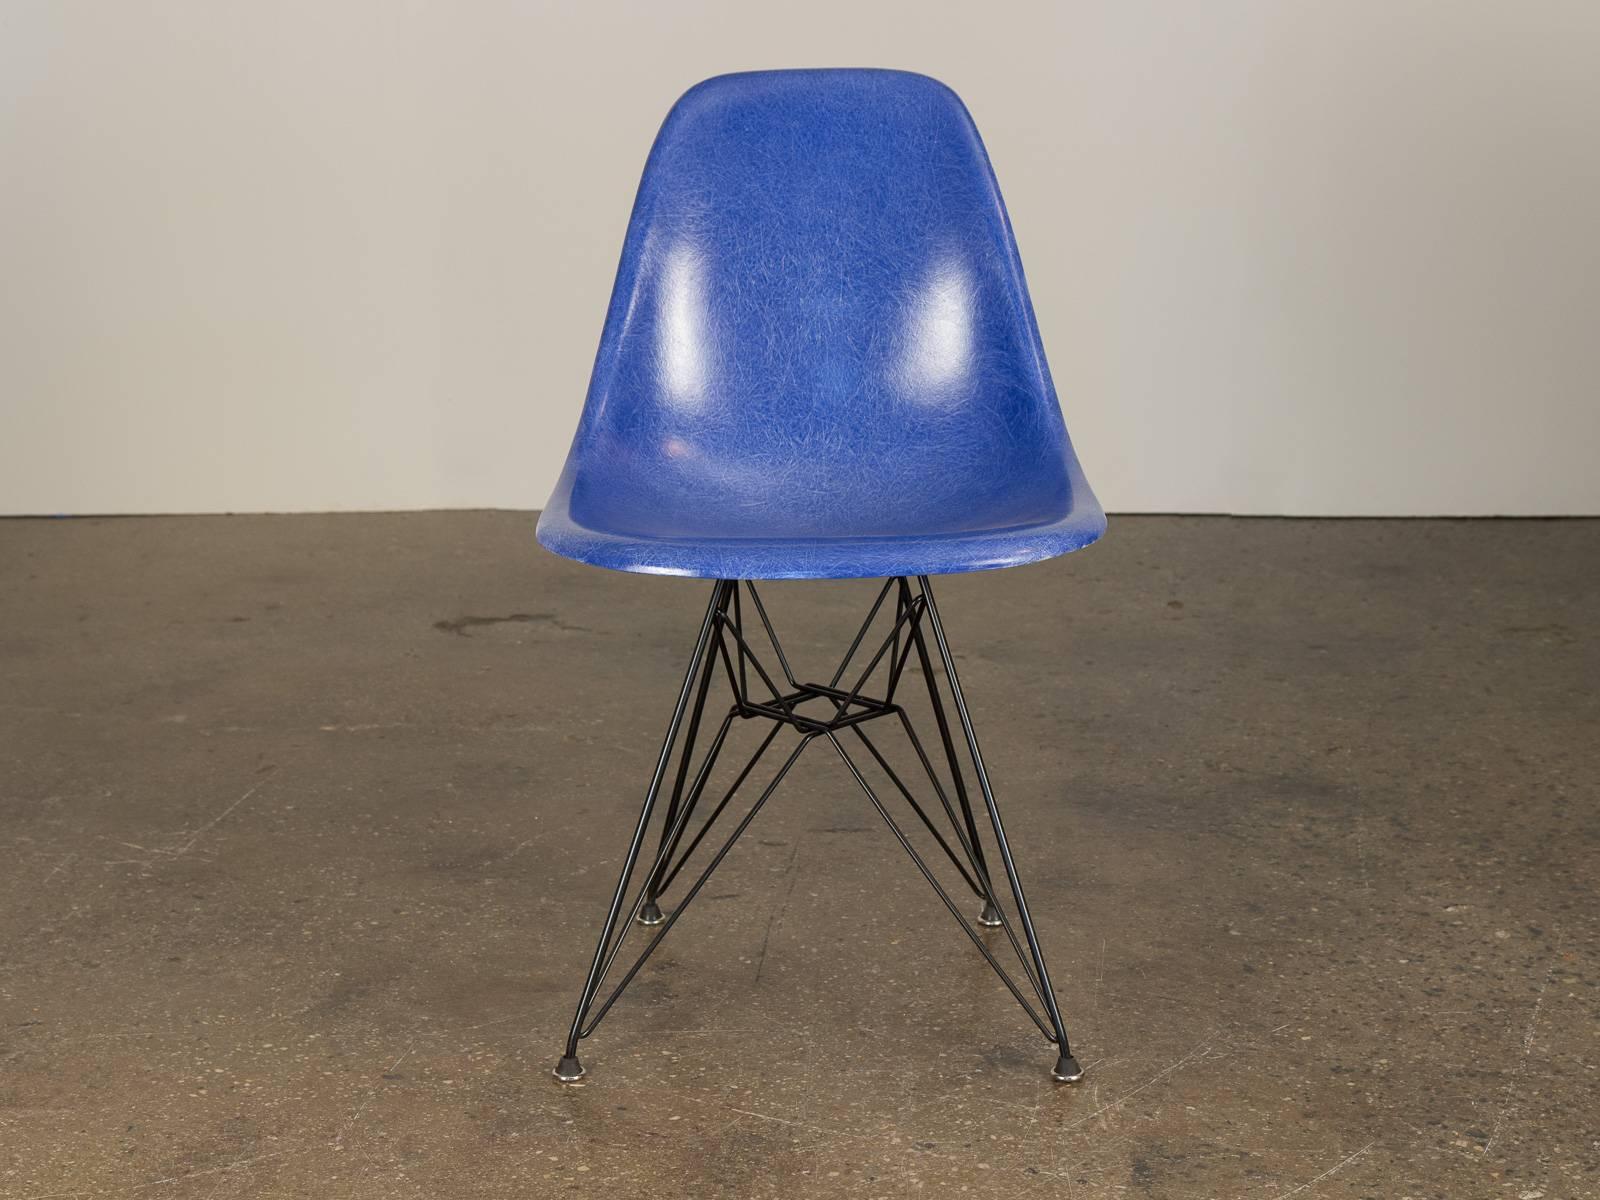 Original 1960er Jahre geformt Fiberglas Schale Stühle in Ultramarine Blue, entworfen von Charles und Ray Eames für Herman Miller. Die glänzenden Schalen sind im Originalzustand, jede mit einer ausgeprägten feinen Textur.  Hier auf dem neuen